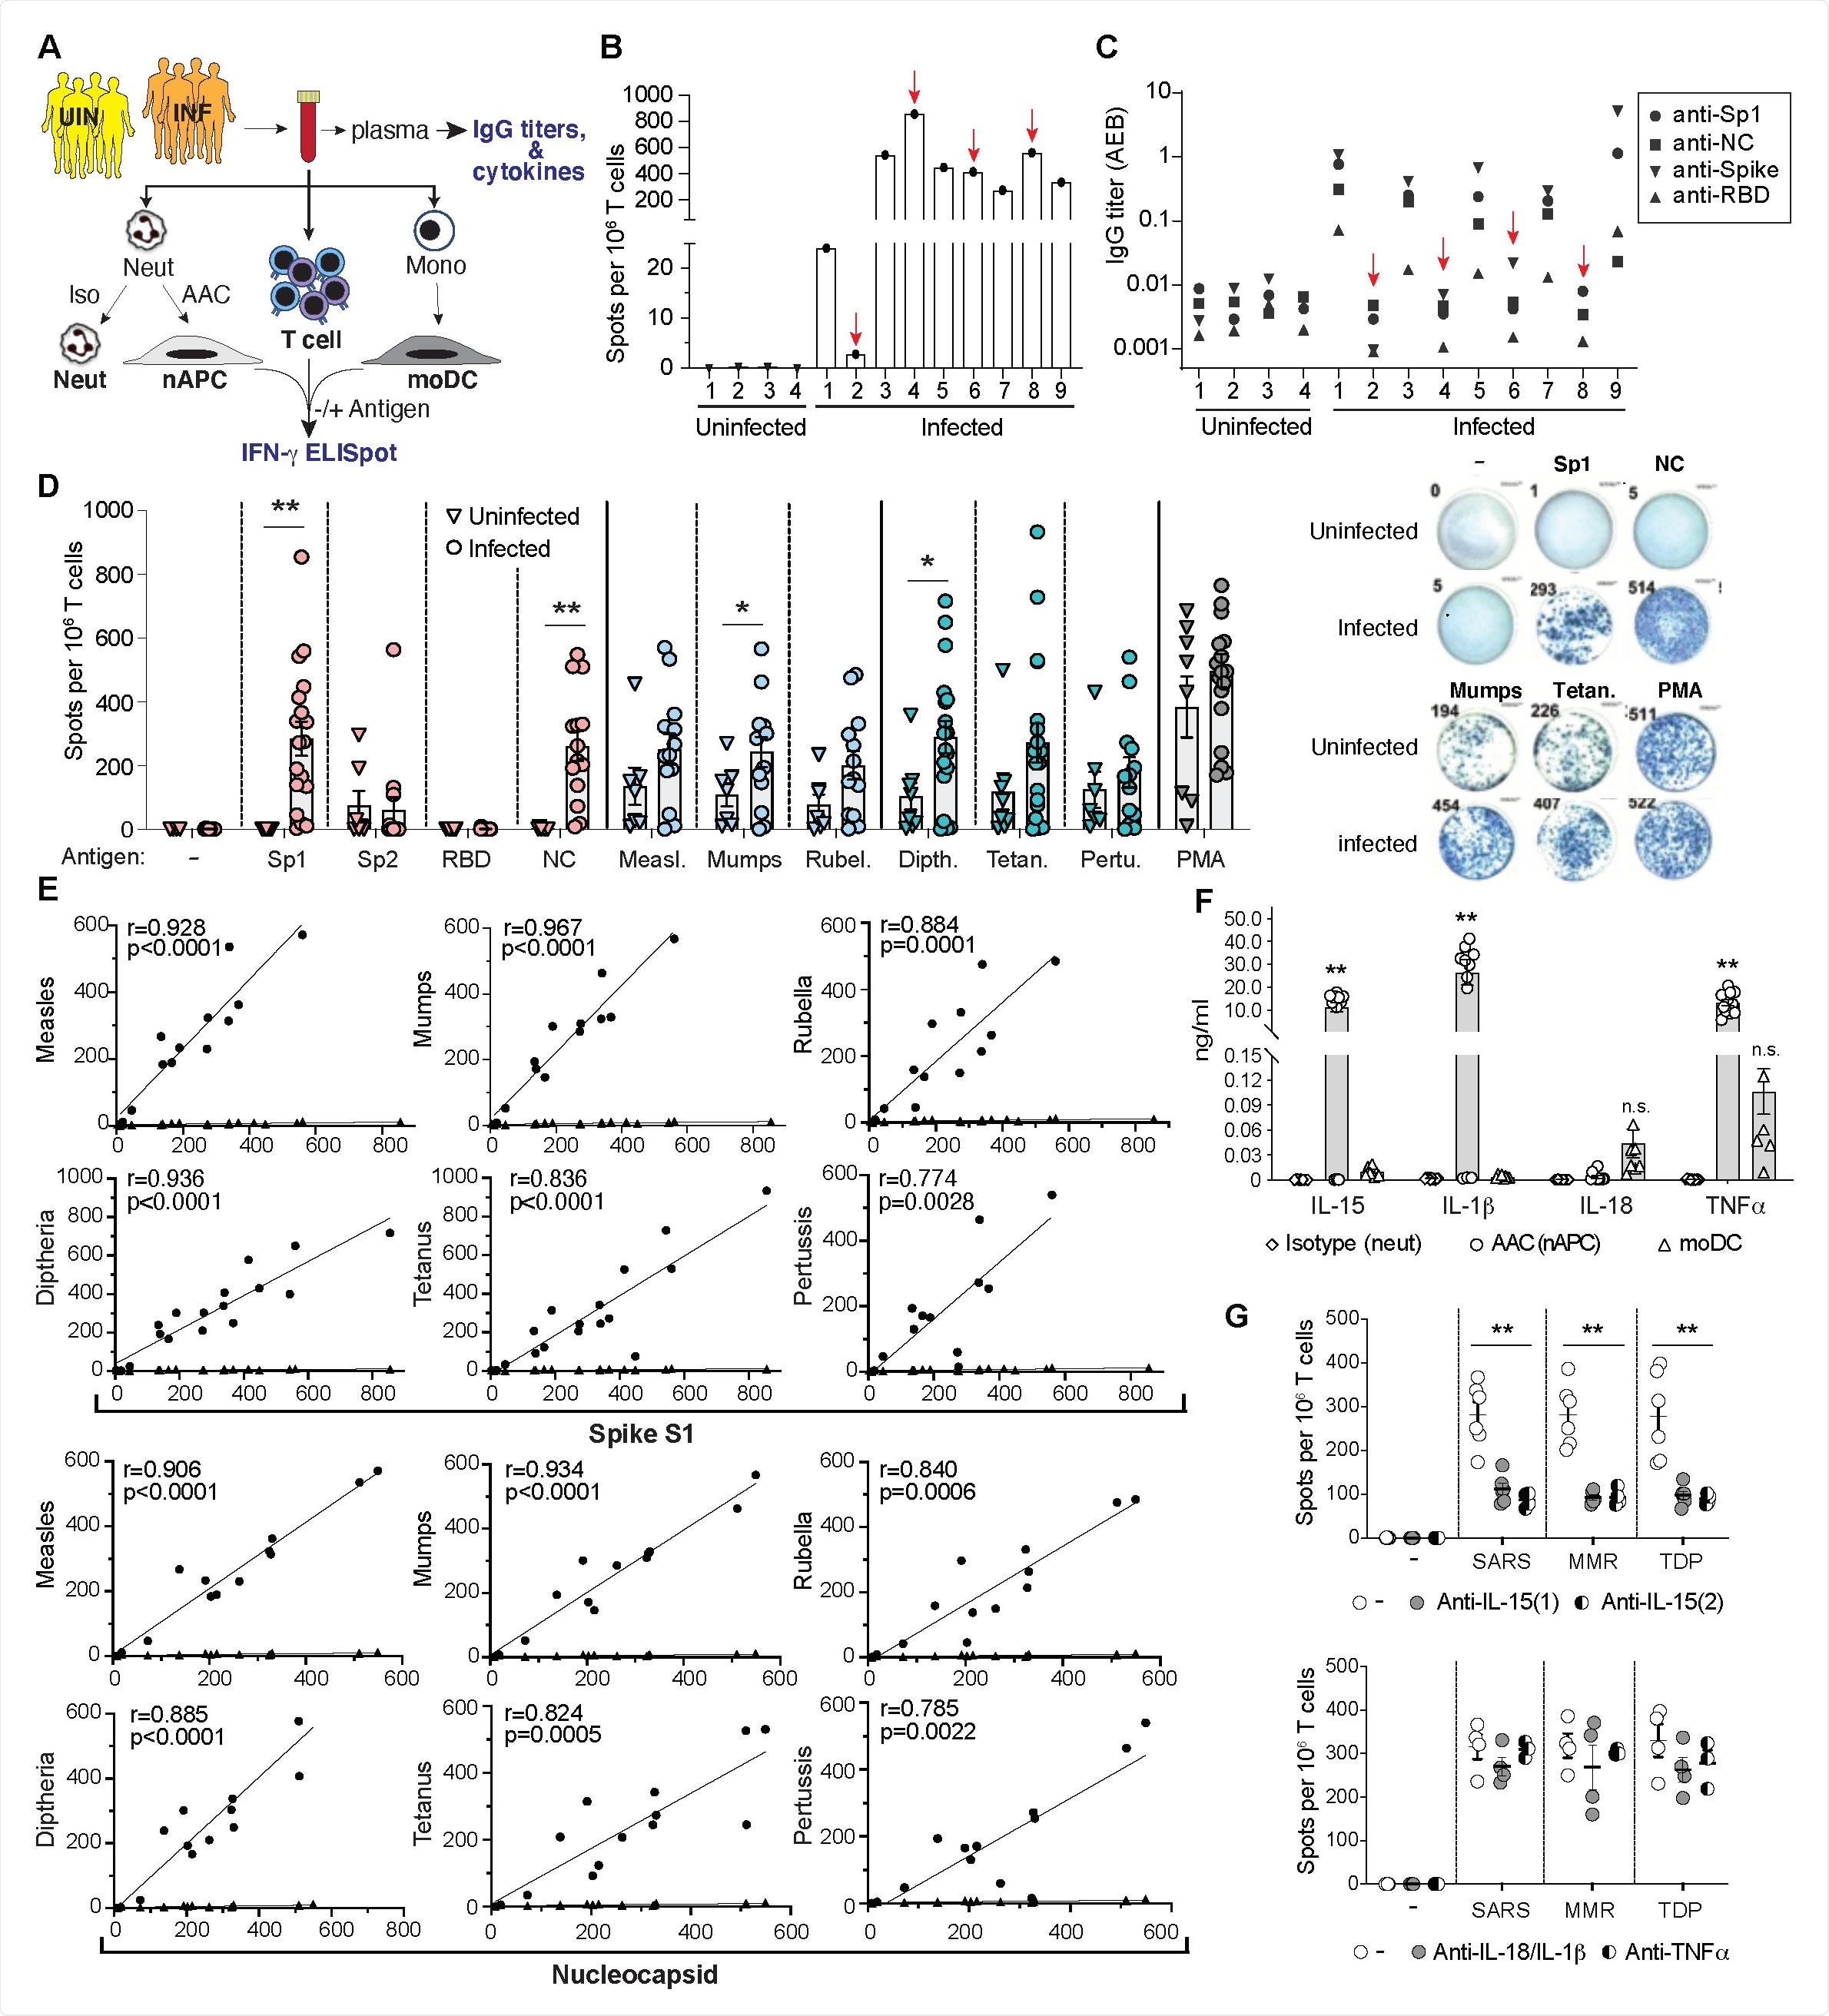 Respostas de célula T a SARS-CoV-2, antígenos do MMR e do Tdap em SARS-CoV-2 contaminados e doadores uninfected